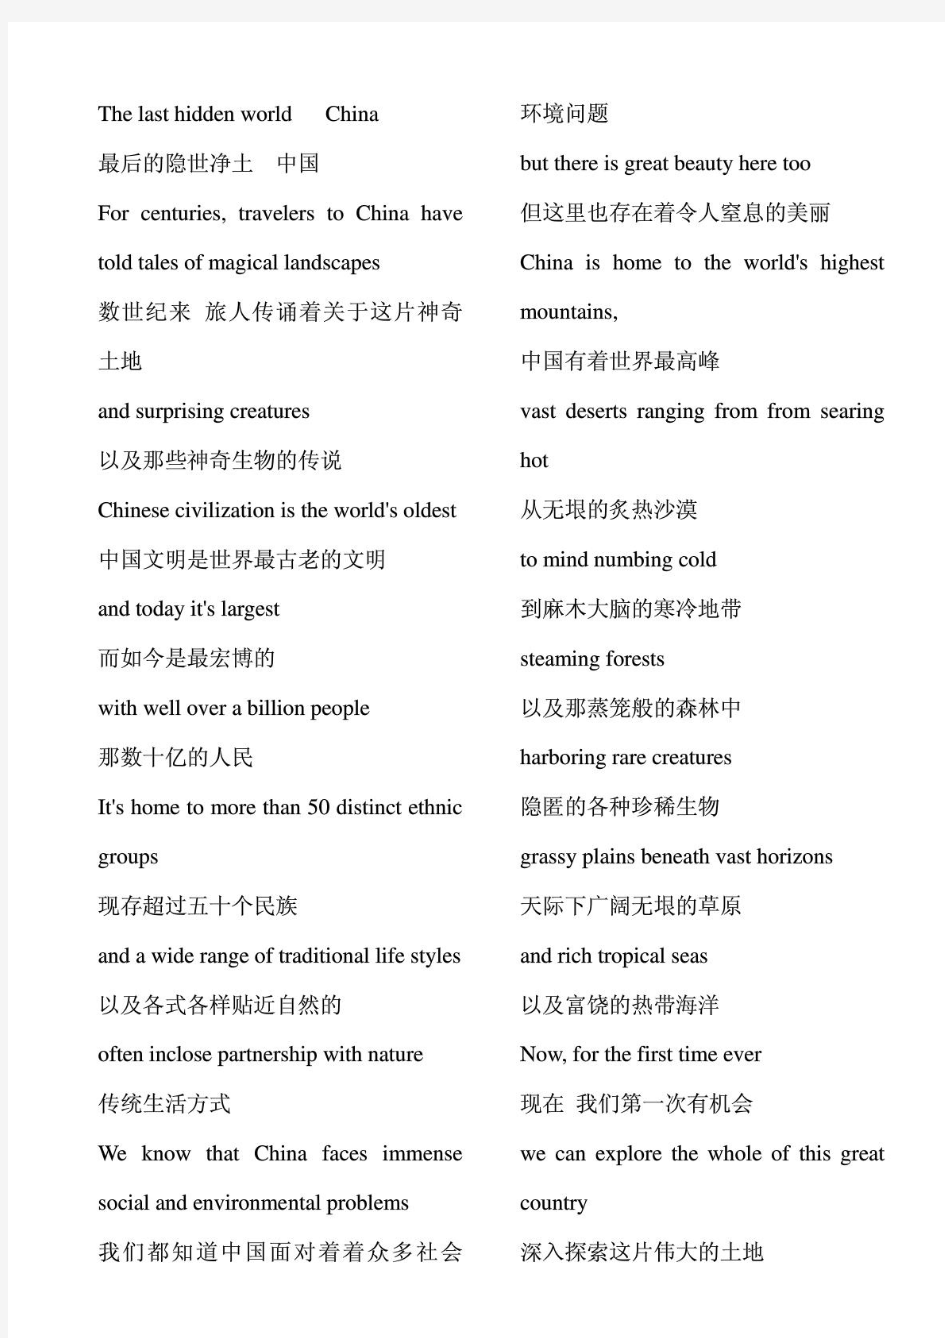 美丽中国第一集中英文字幕(分两栏_4号字_适合打印)